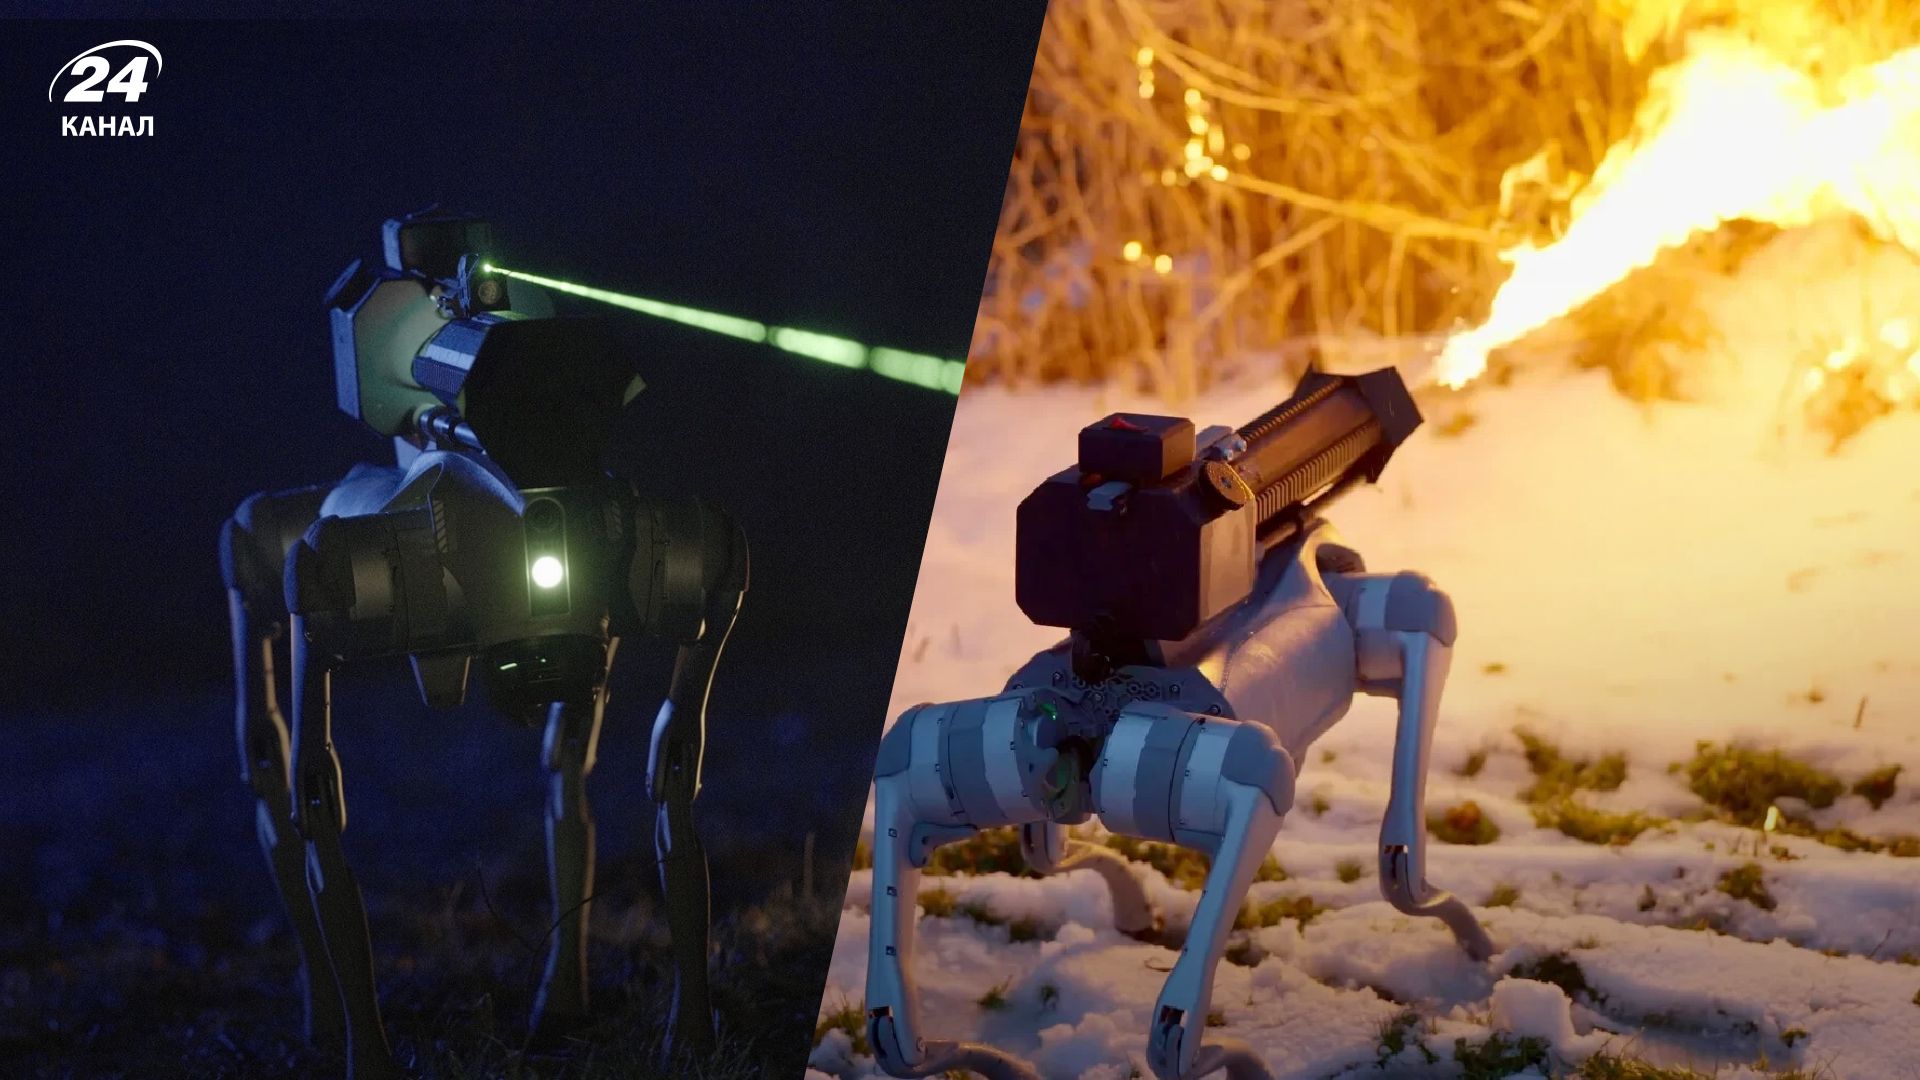 Робот-собака Термонатор, що метає вогонь, продається у США - відео та фото - Men